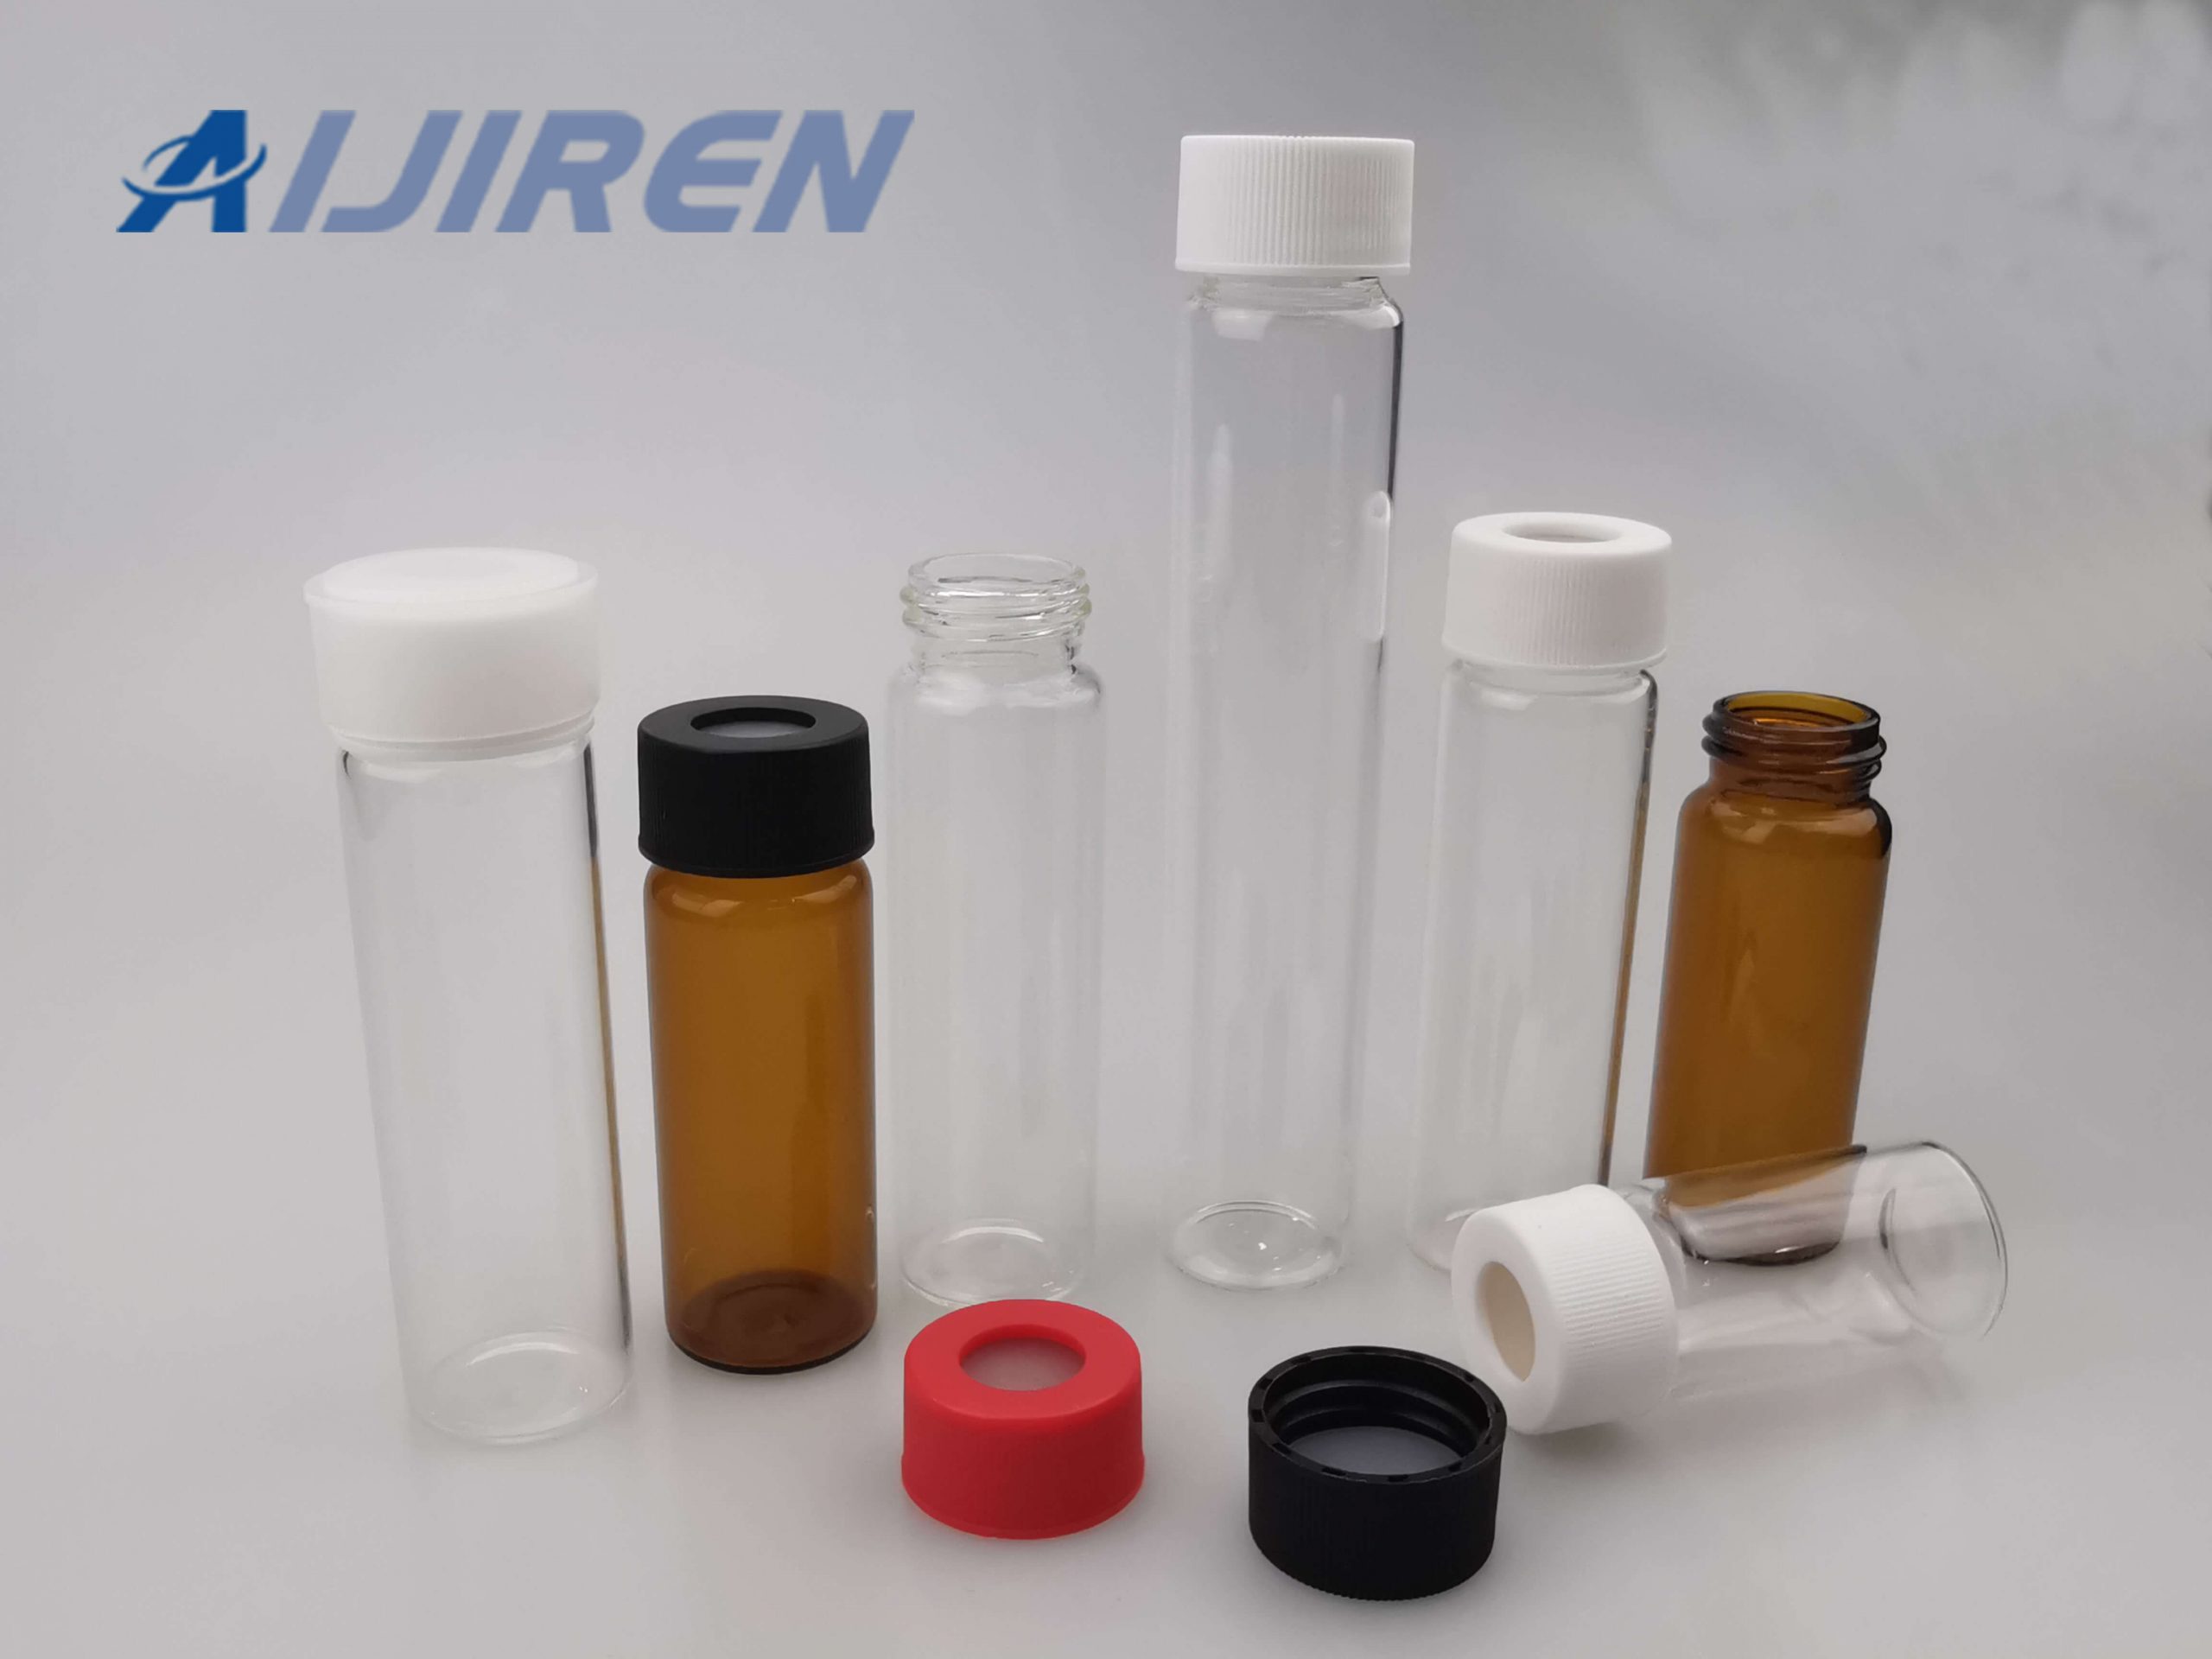 24mm Screw Top Sample Storage Vials from Aijiren